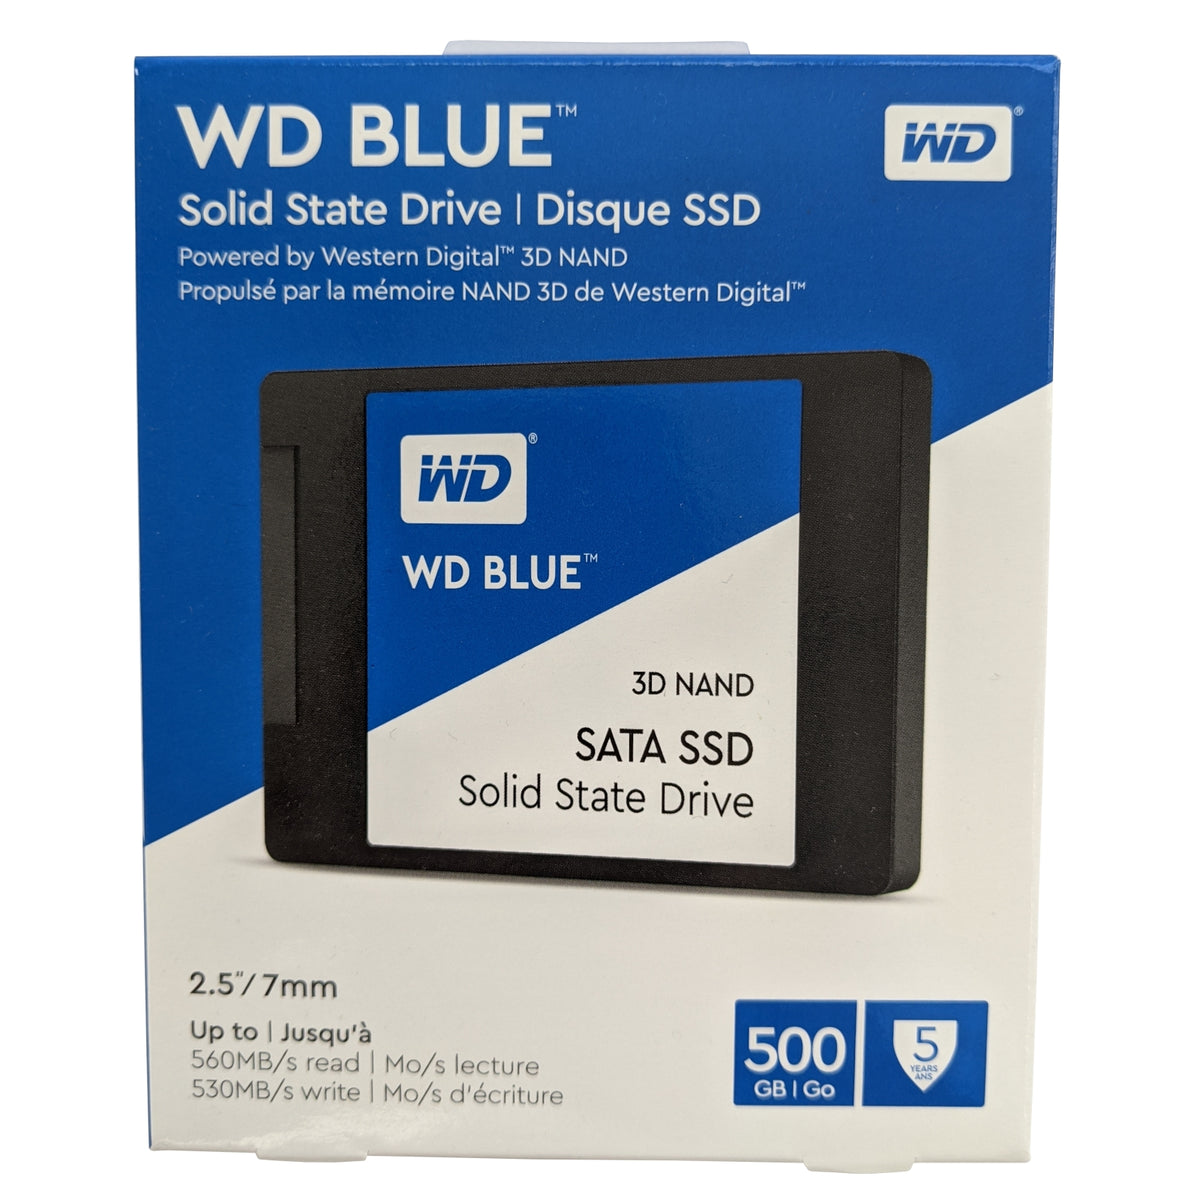 Wds100t2b0a. Твердотельный накопитель WD Blue wds100t2b0a 1тб, 2.5", SATA III. SSD накопитель WD wds100t2b0a.